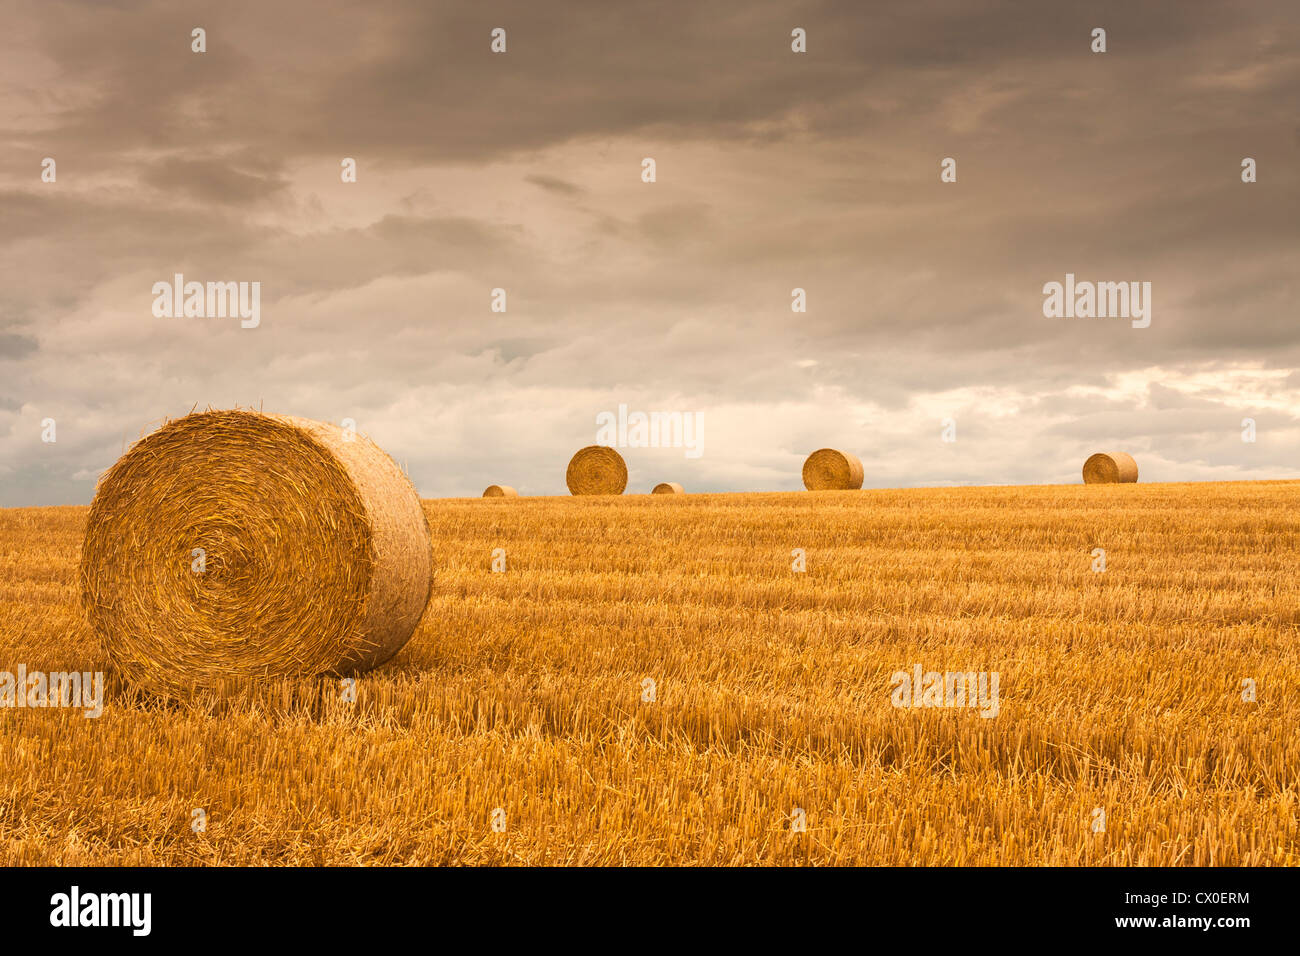 Appena raccolto campo con stoppie di grano e balle di paglia nella campagna inglese come il sole si sta esaurendo. Foto Stock